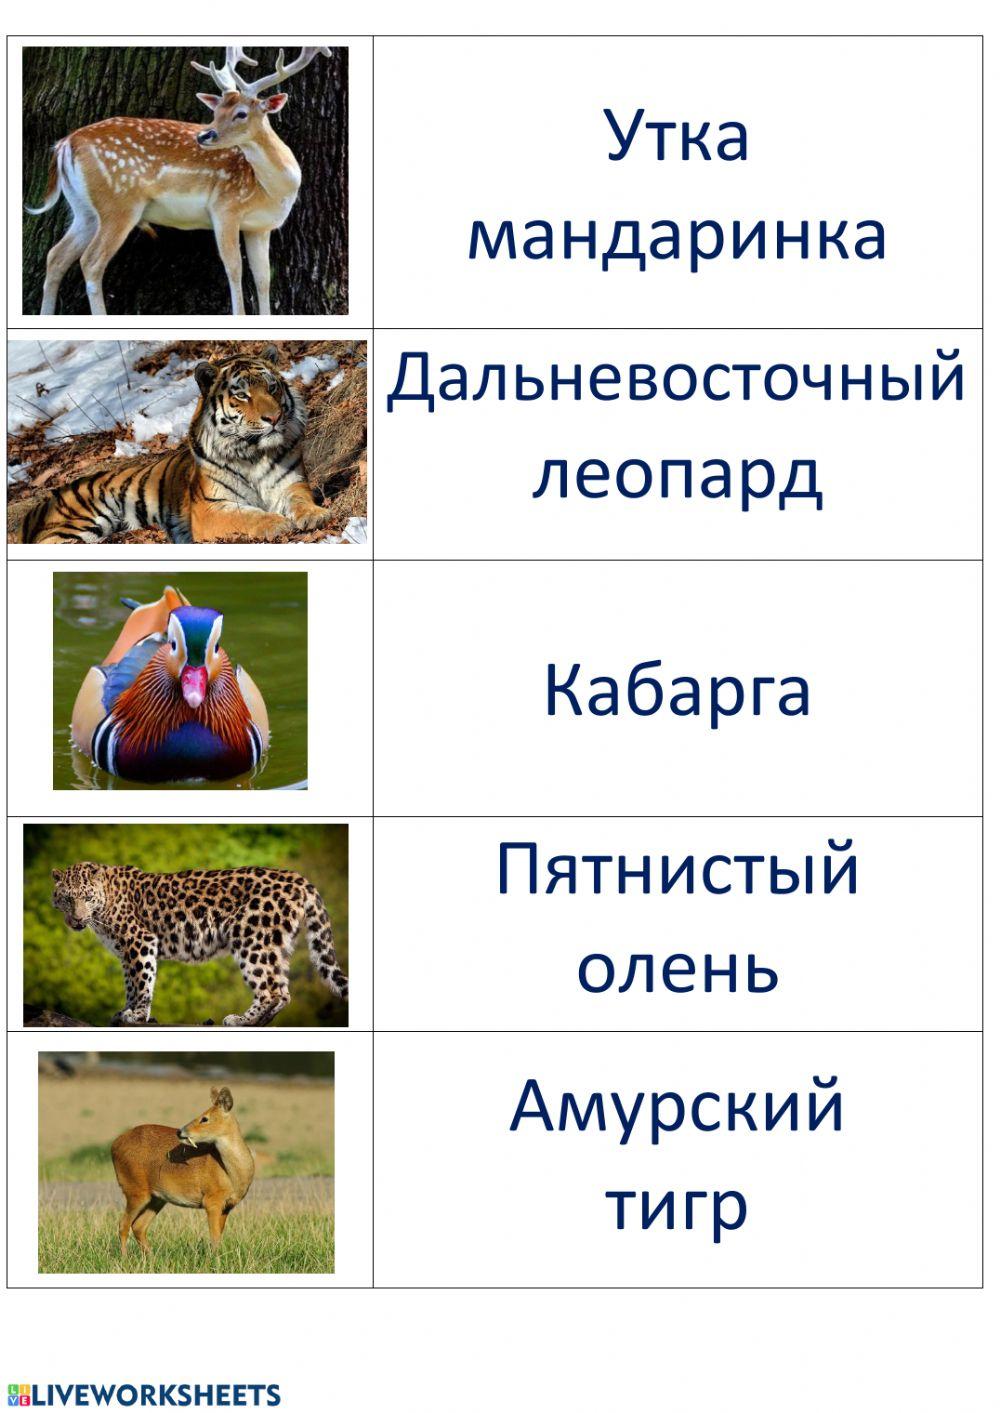 Животные Приморского края